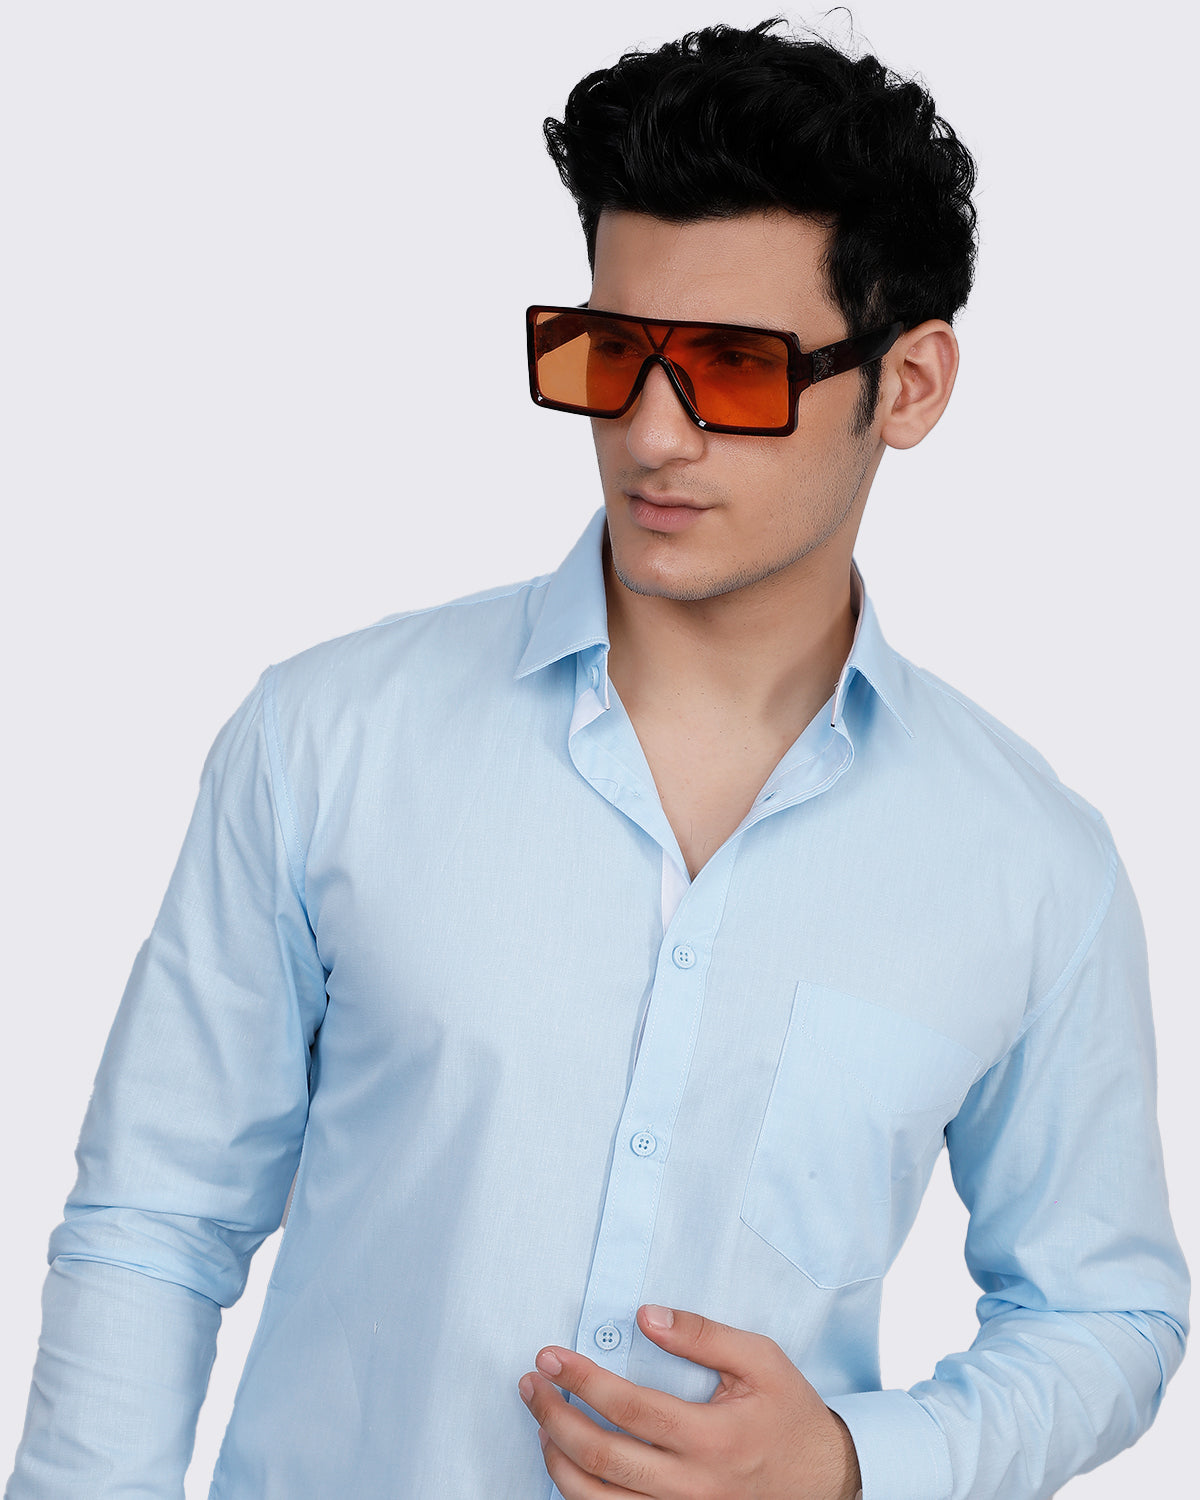 Men's Light Blue Solid Semi Formal Shirt